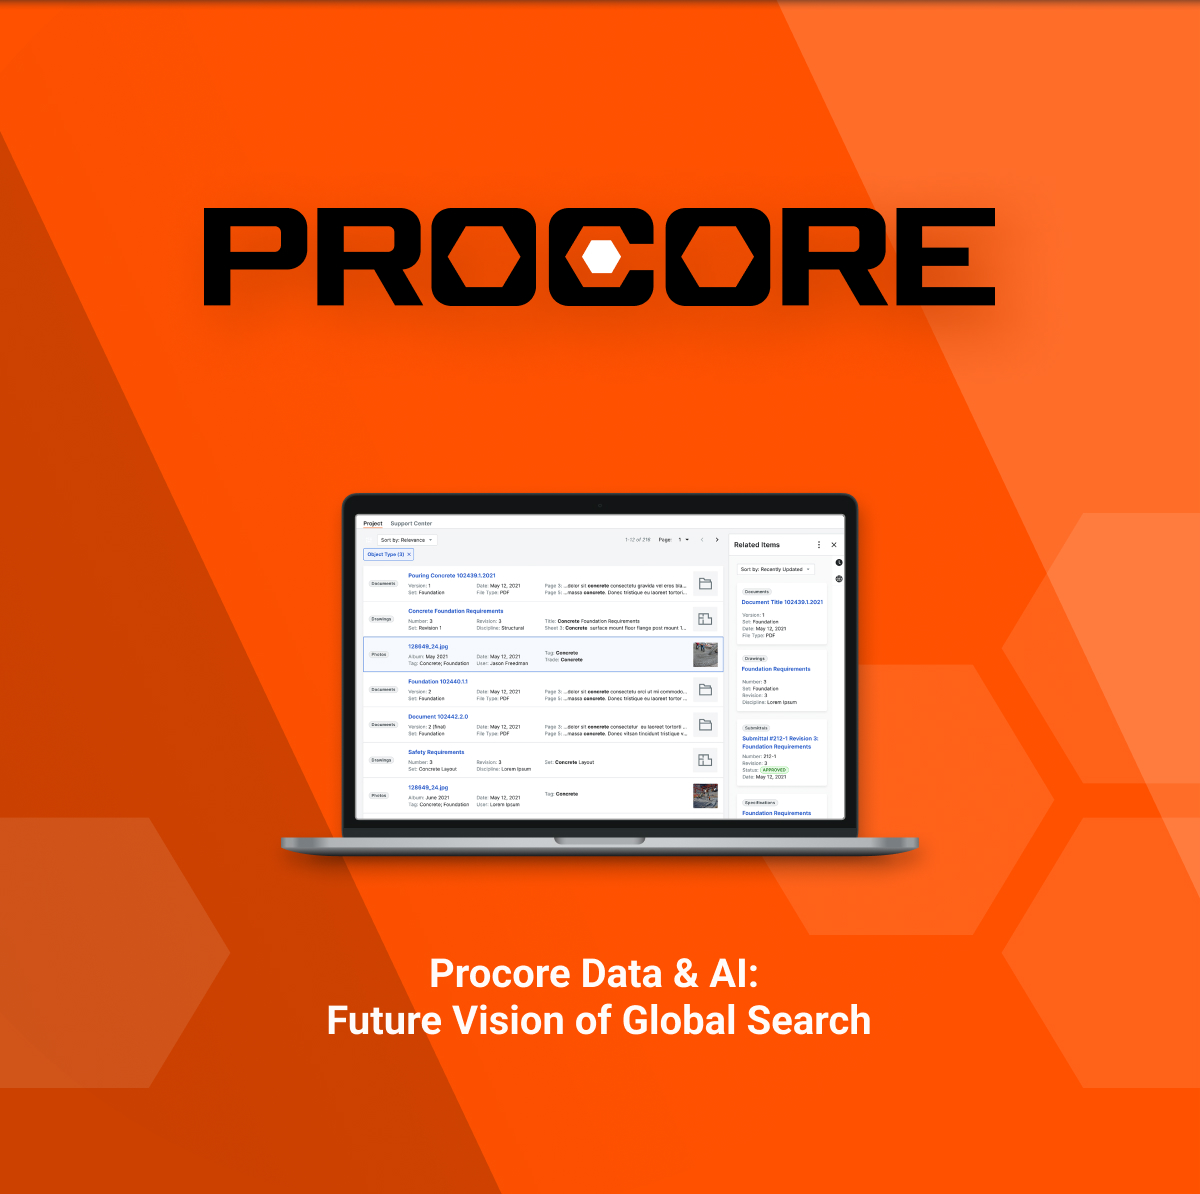 Procore Data & AI: Future Vision of Global Search